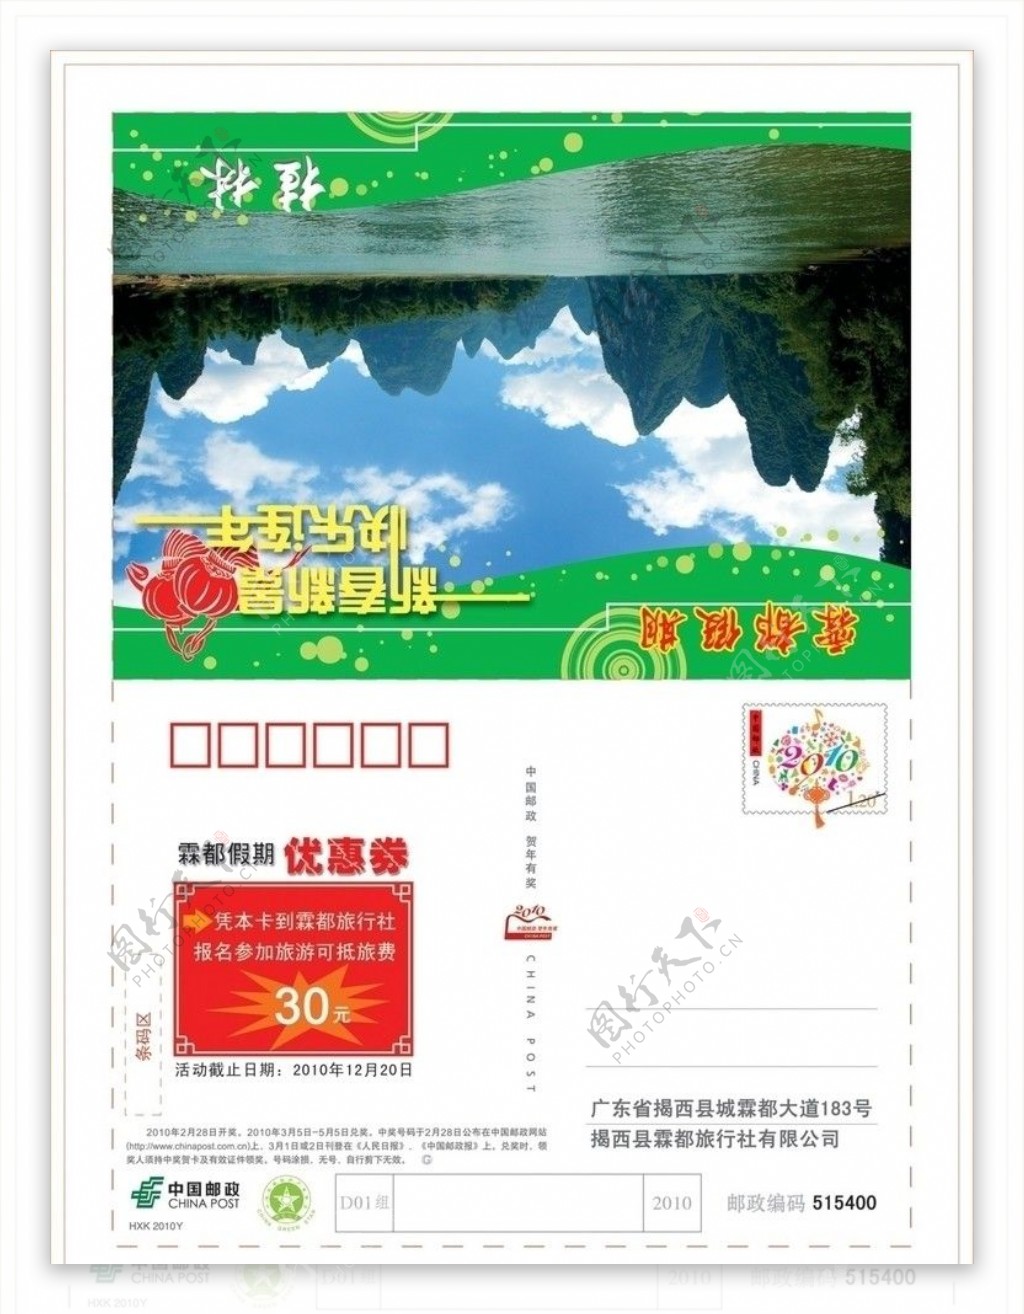 旅游公司邮政广告信卡封面图片